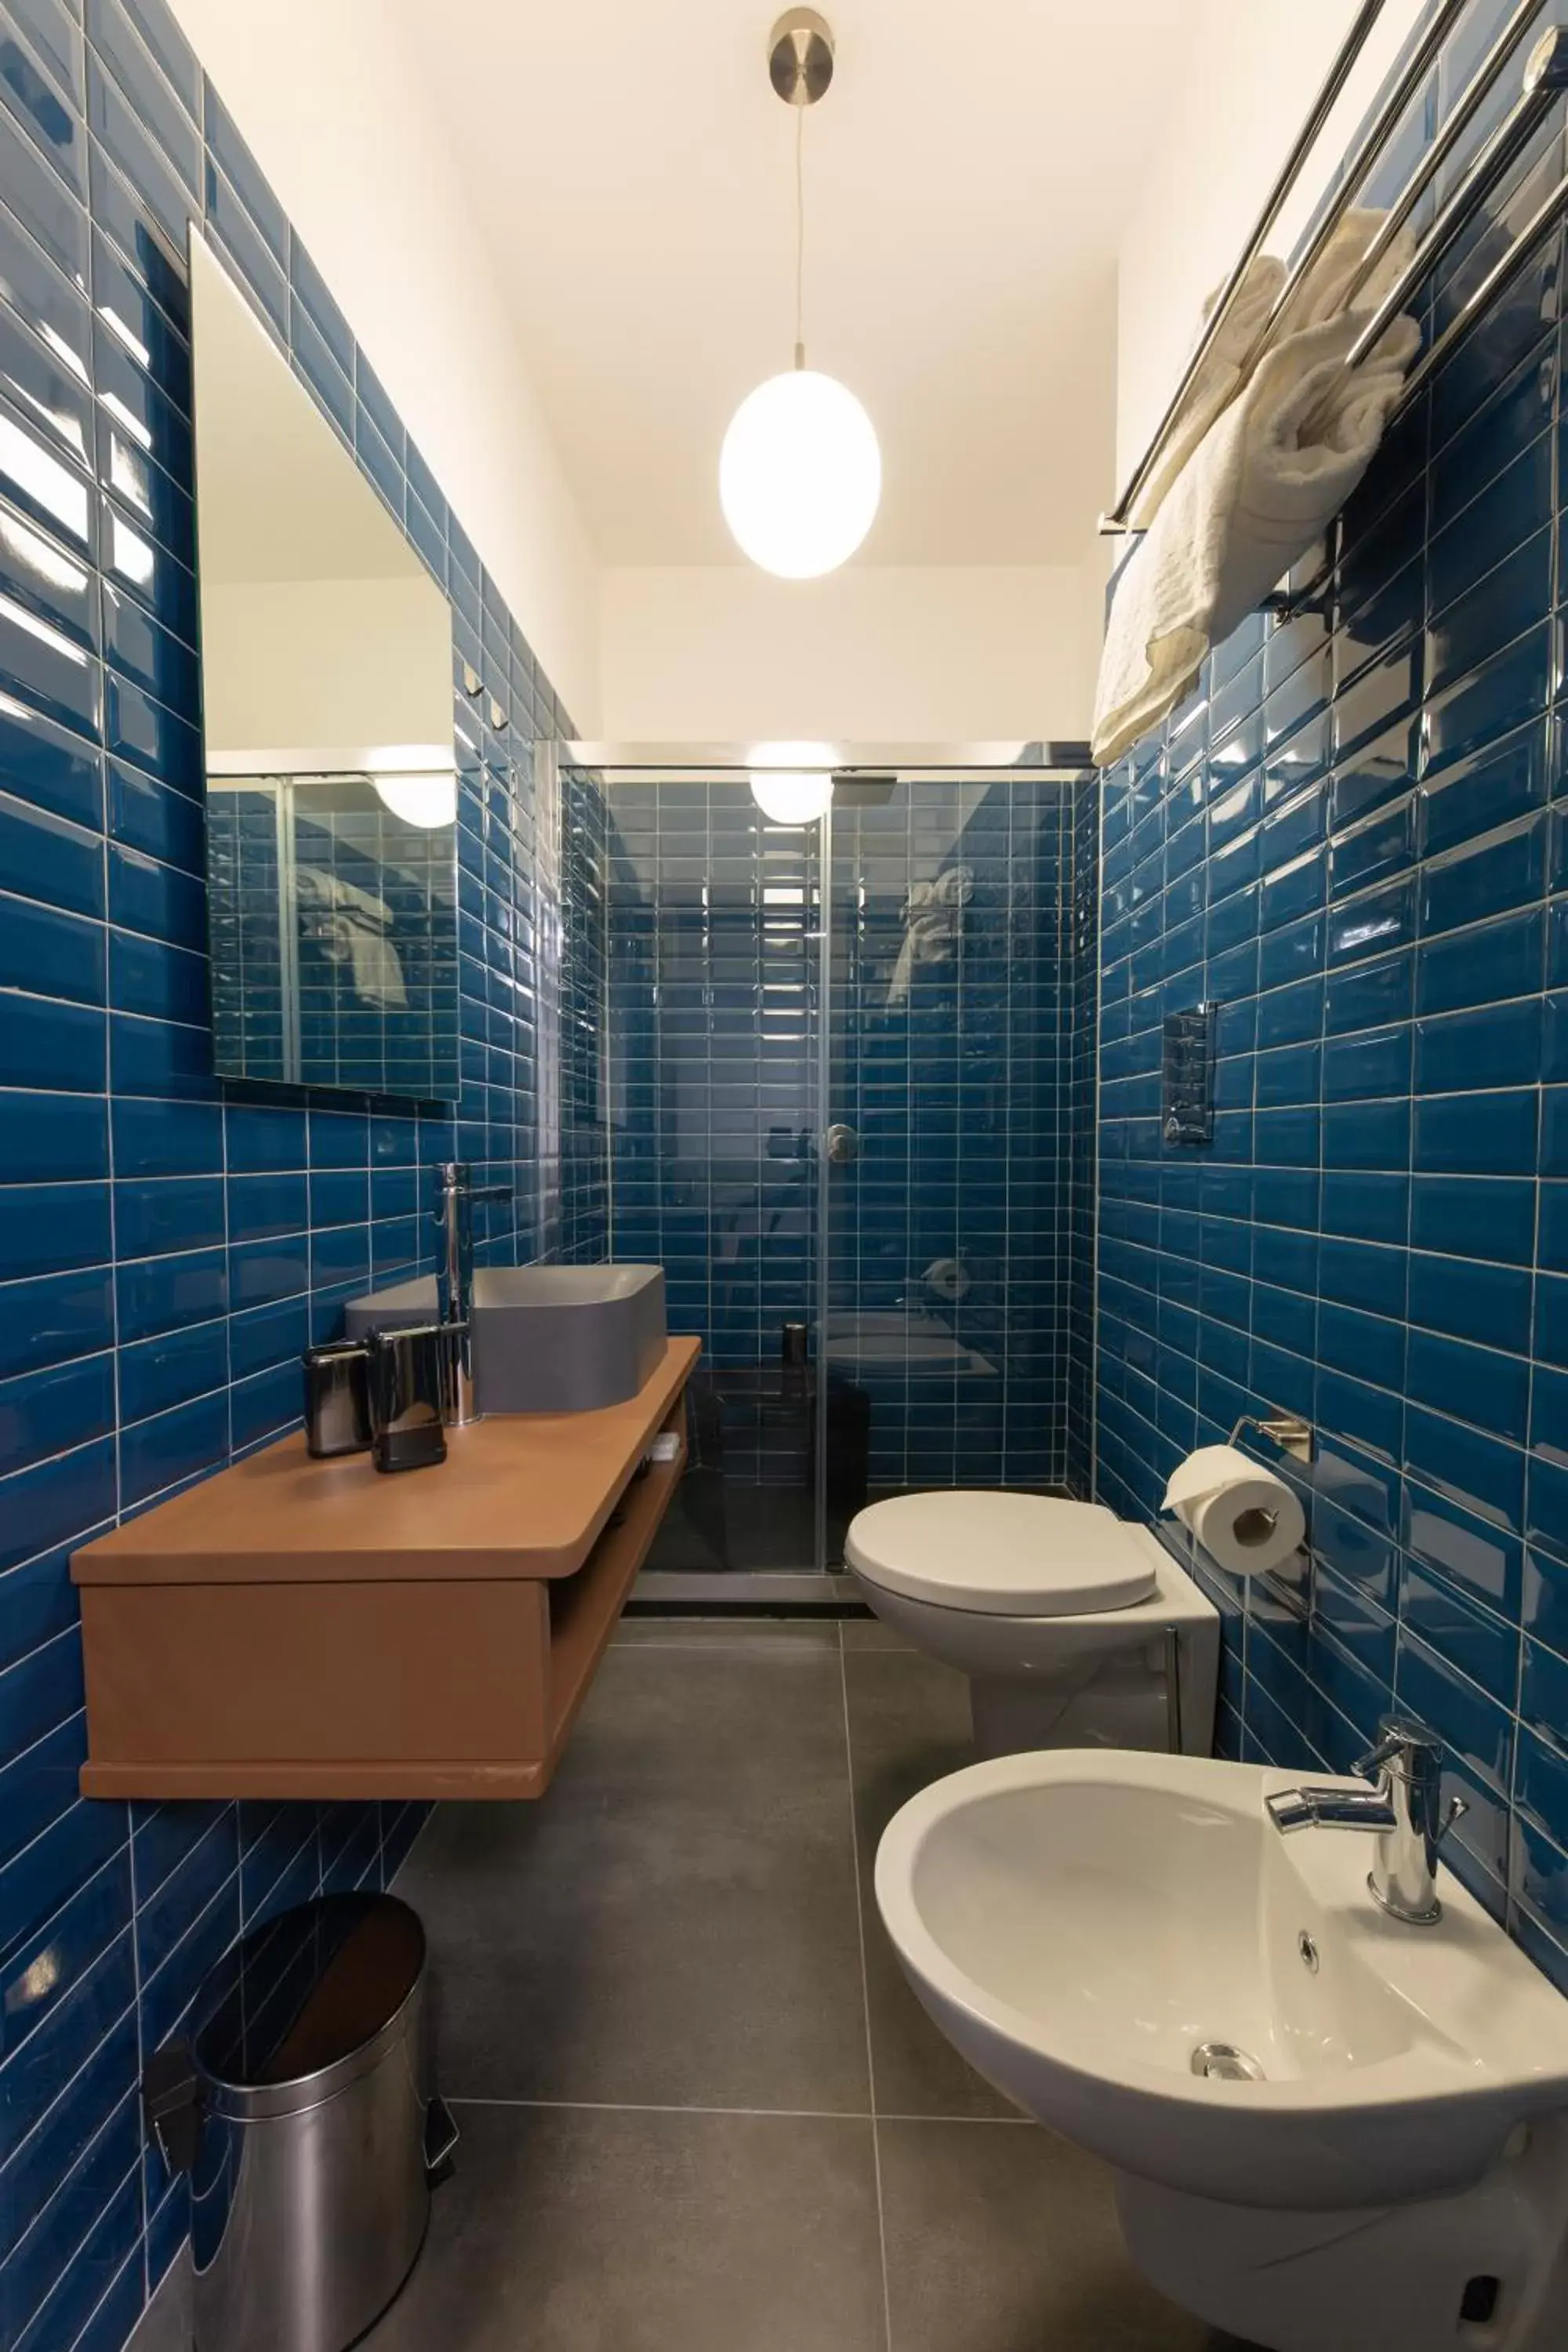 Bathroom in Cloister inn